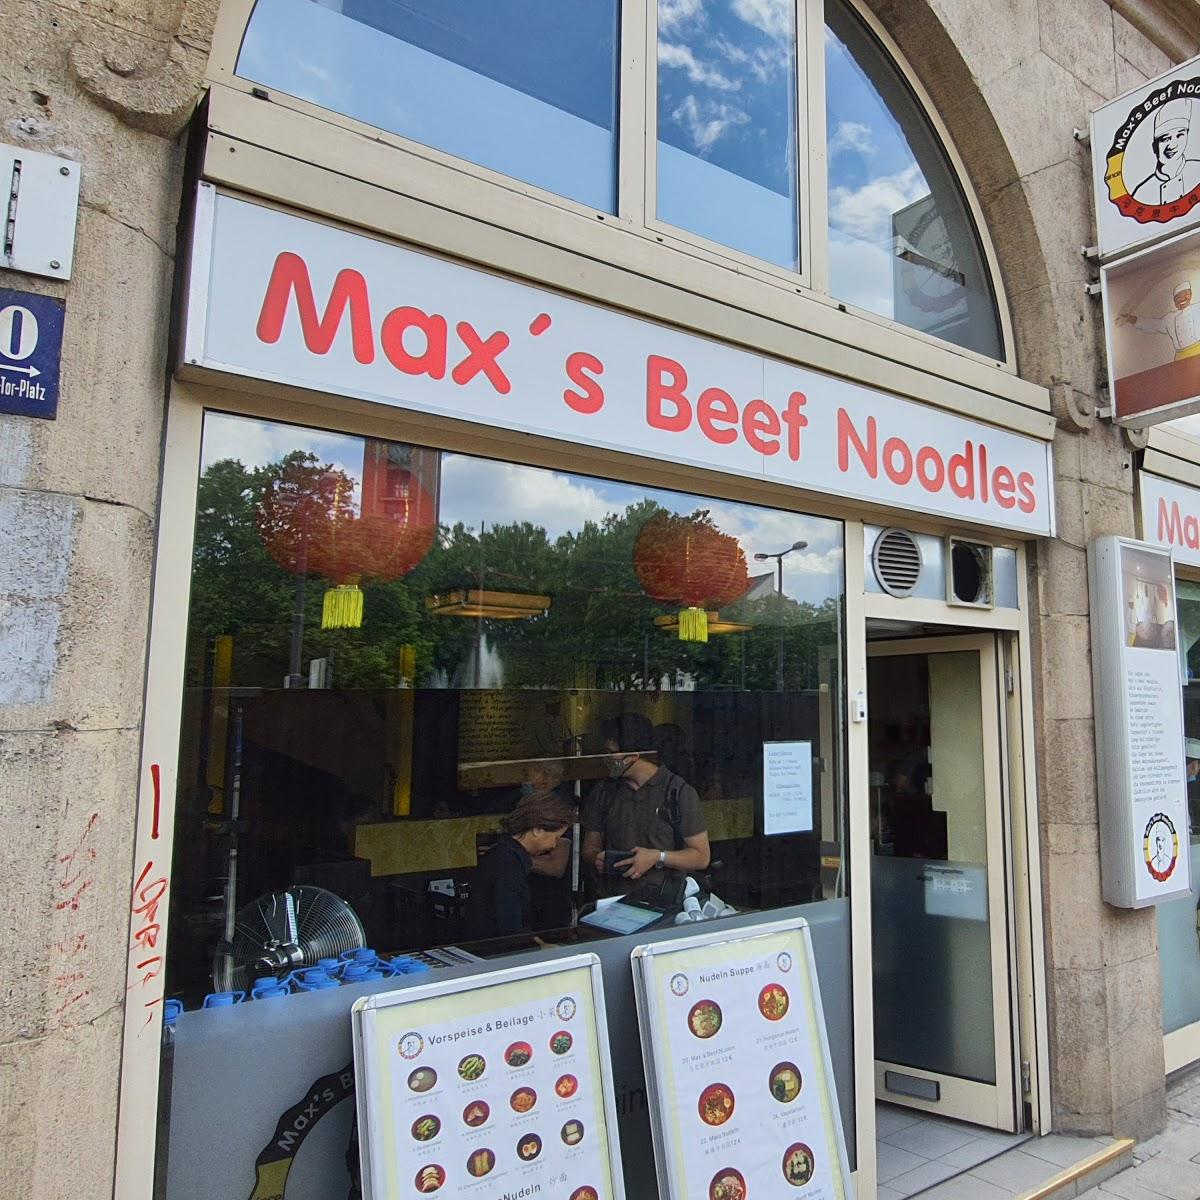 Restaurant "Max’s Beef Noodles" in München